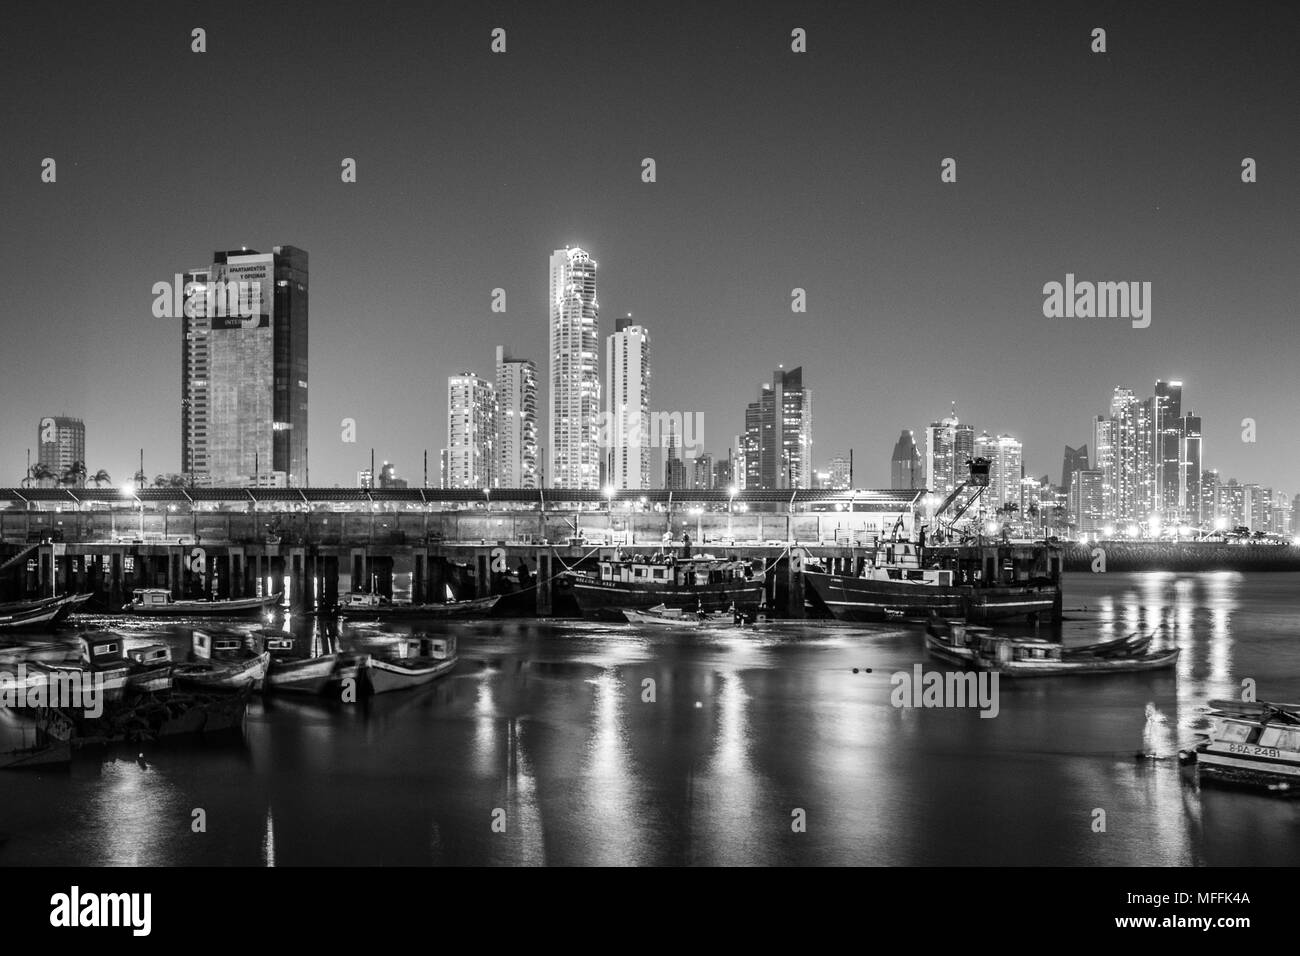 Boote und City Skyline bei Nacht - stadtbild von Panama City Business District - beleuchtete Wolkenkratzer Gebäude Stockfoto